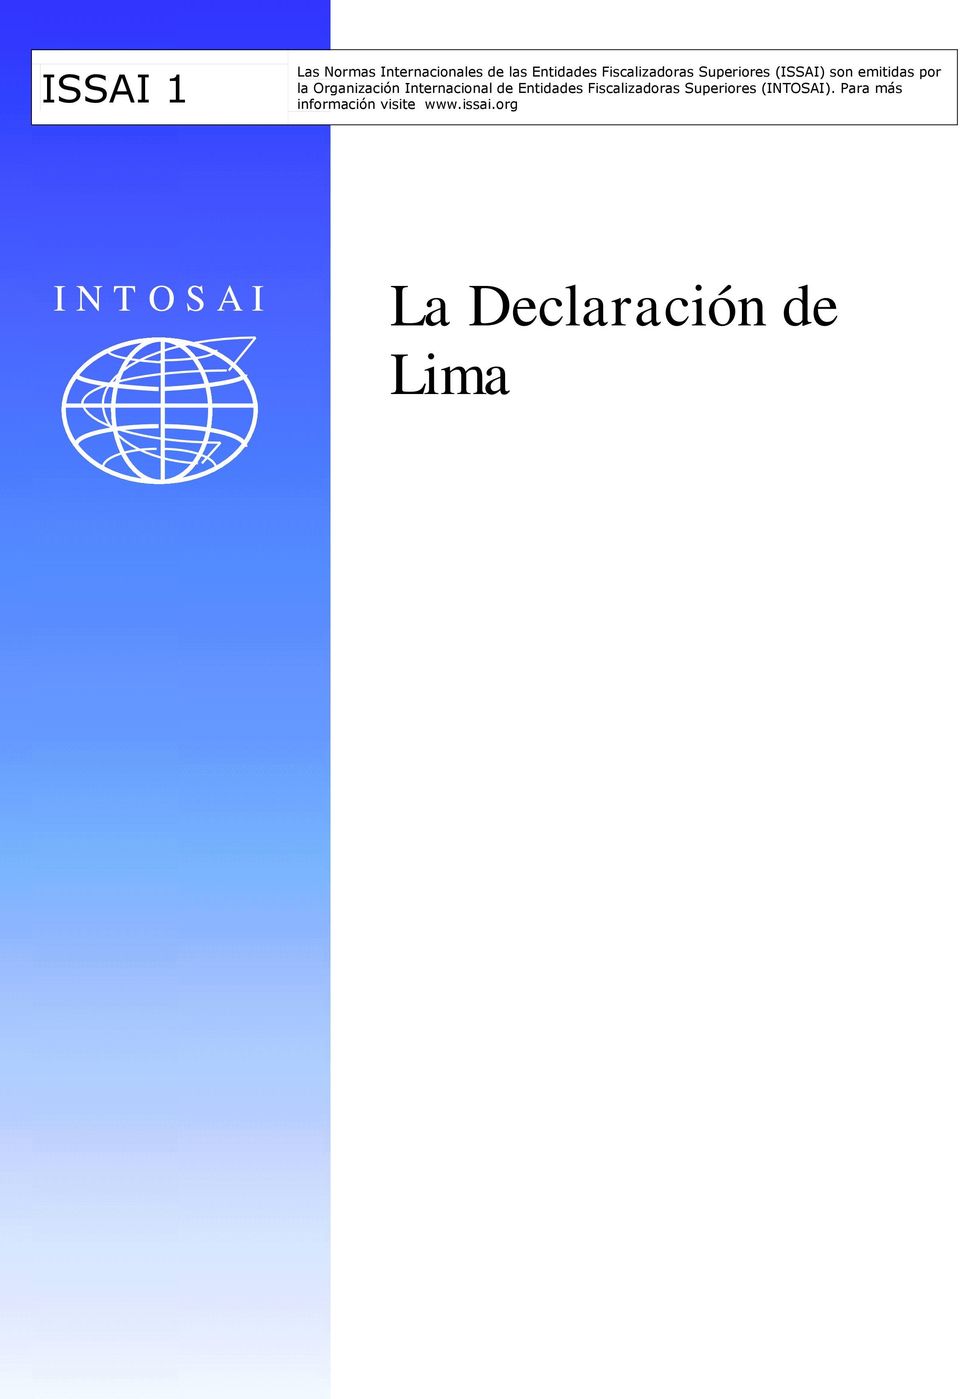 Organización Internacional de Entidades Fiscalizadoras Superiores